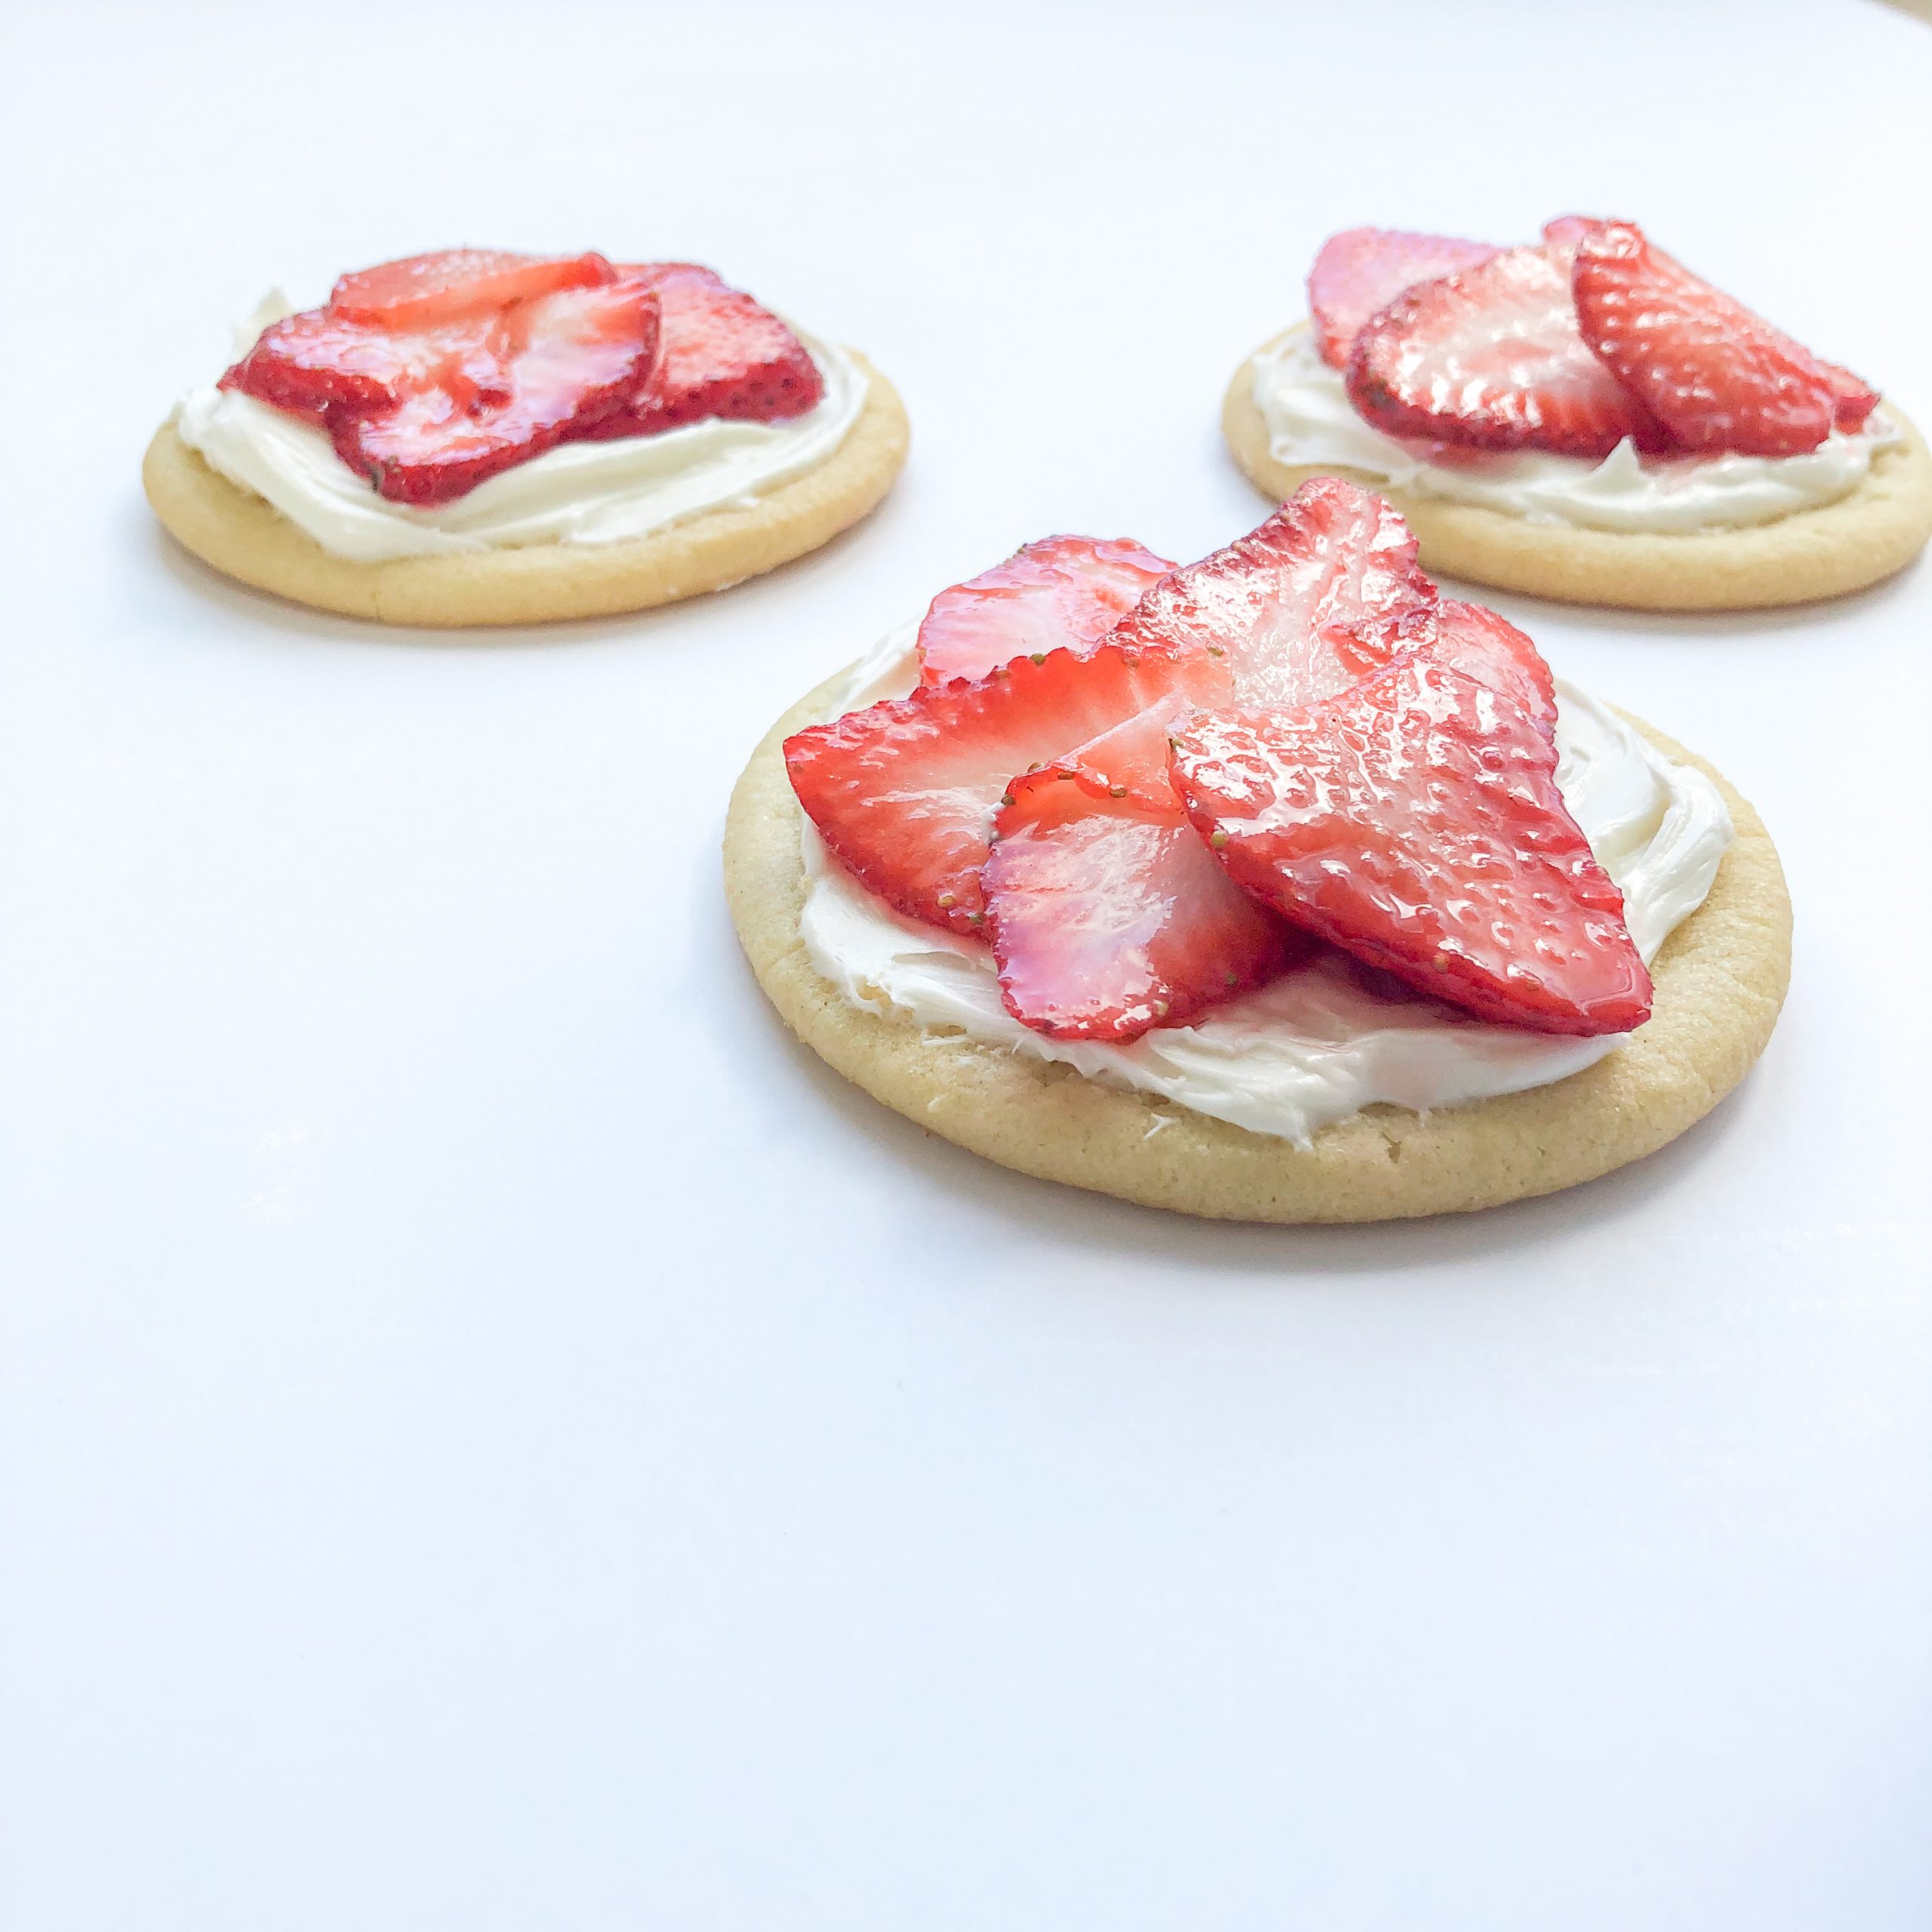 Strawberry Fruit Tarts